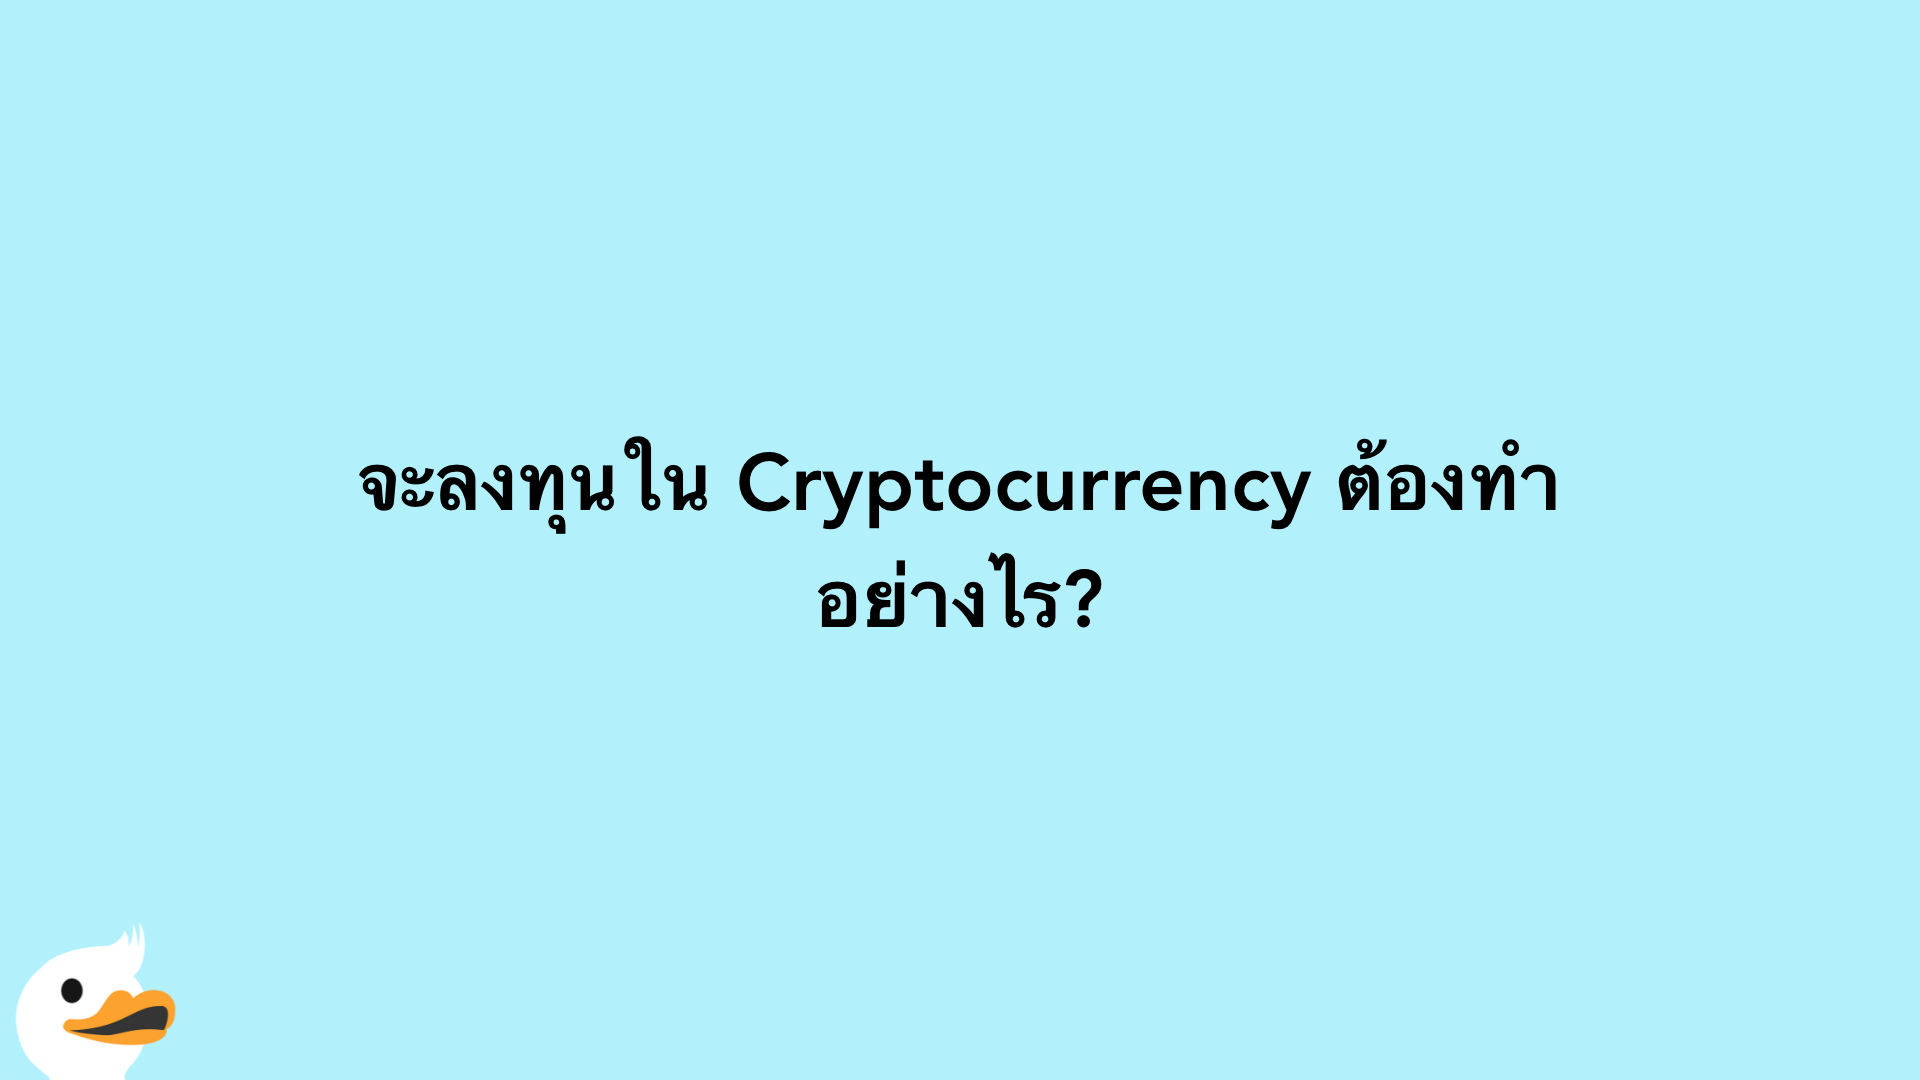 จะลงทุนใน Cryptocurrency ต้องทำอย่างไร?